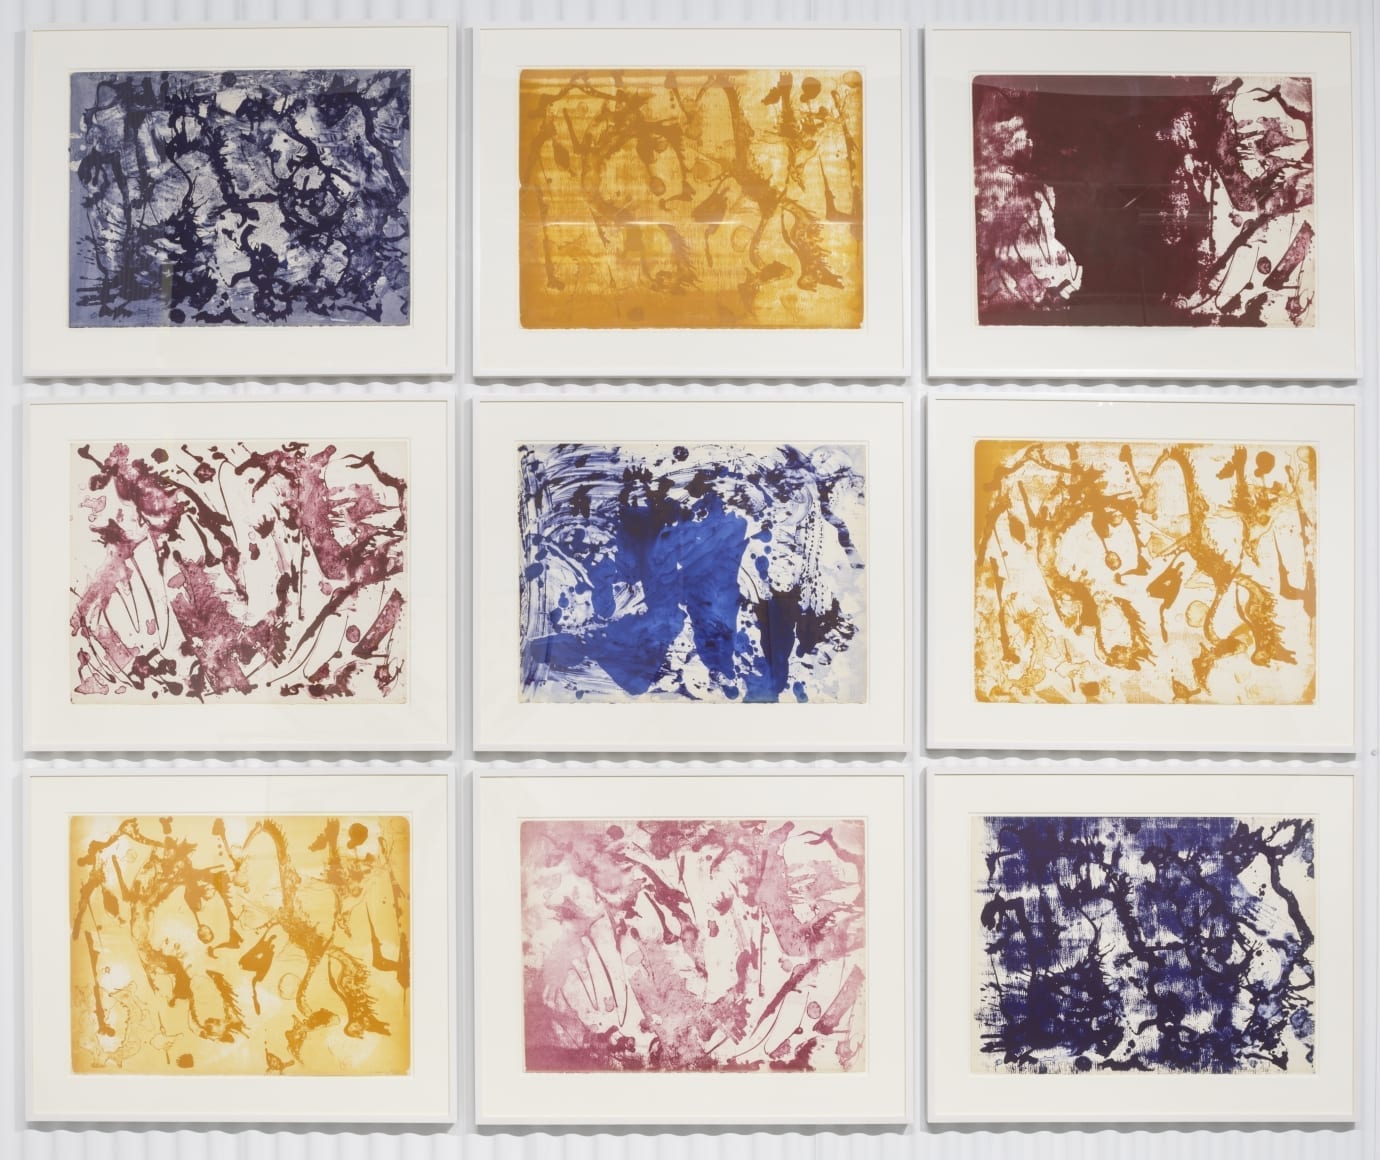 Long Lines for Lee Krasner, 1970, Complete set of nine lithographs in color by Lee Krasner